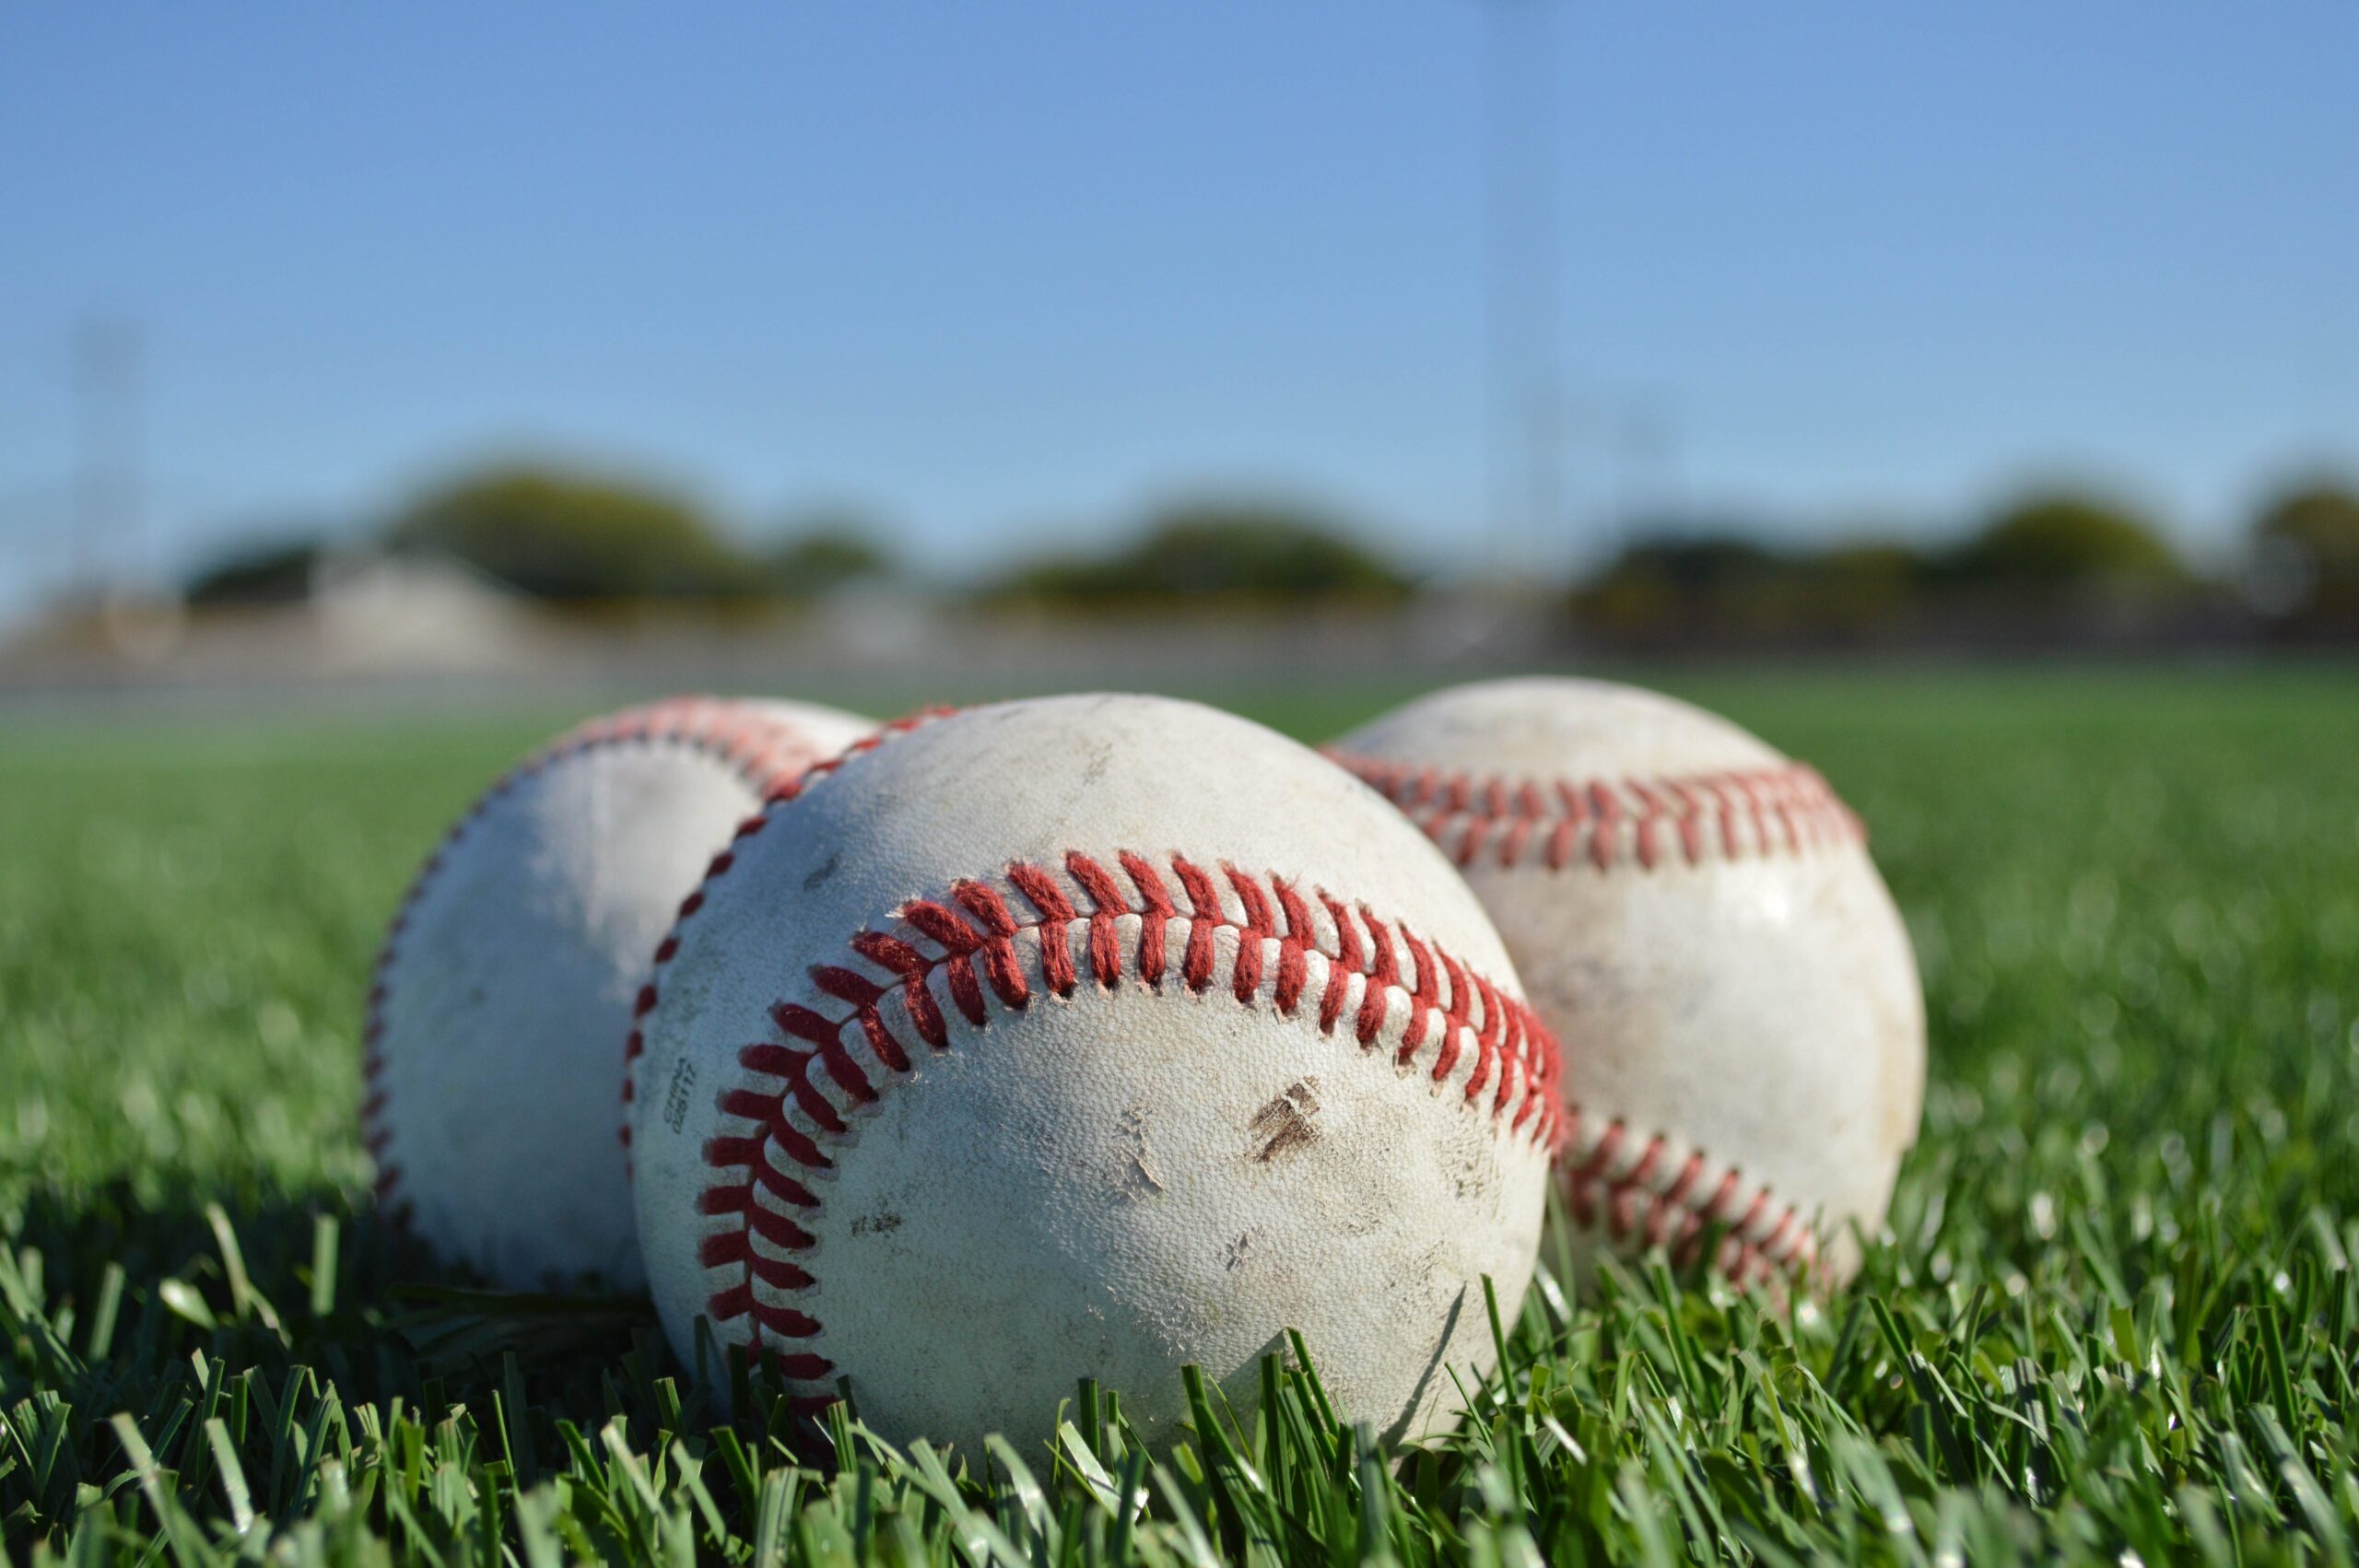 Endeavor Sells 10 Minor League Baseball Teams to Silver Lake